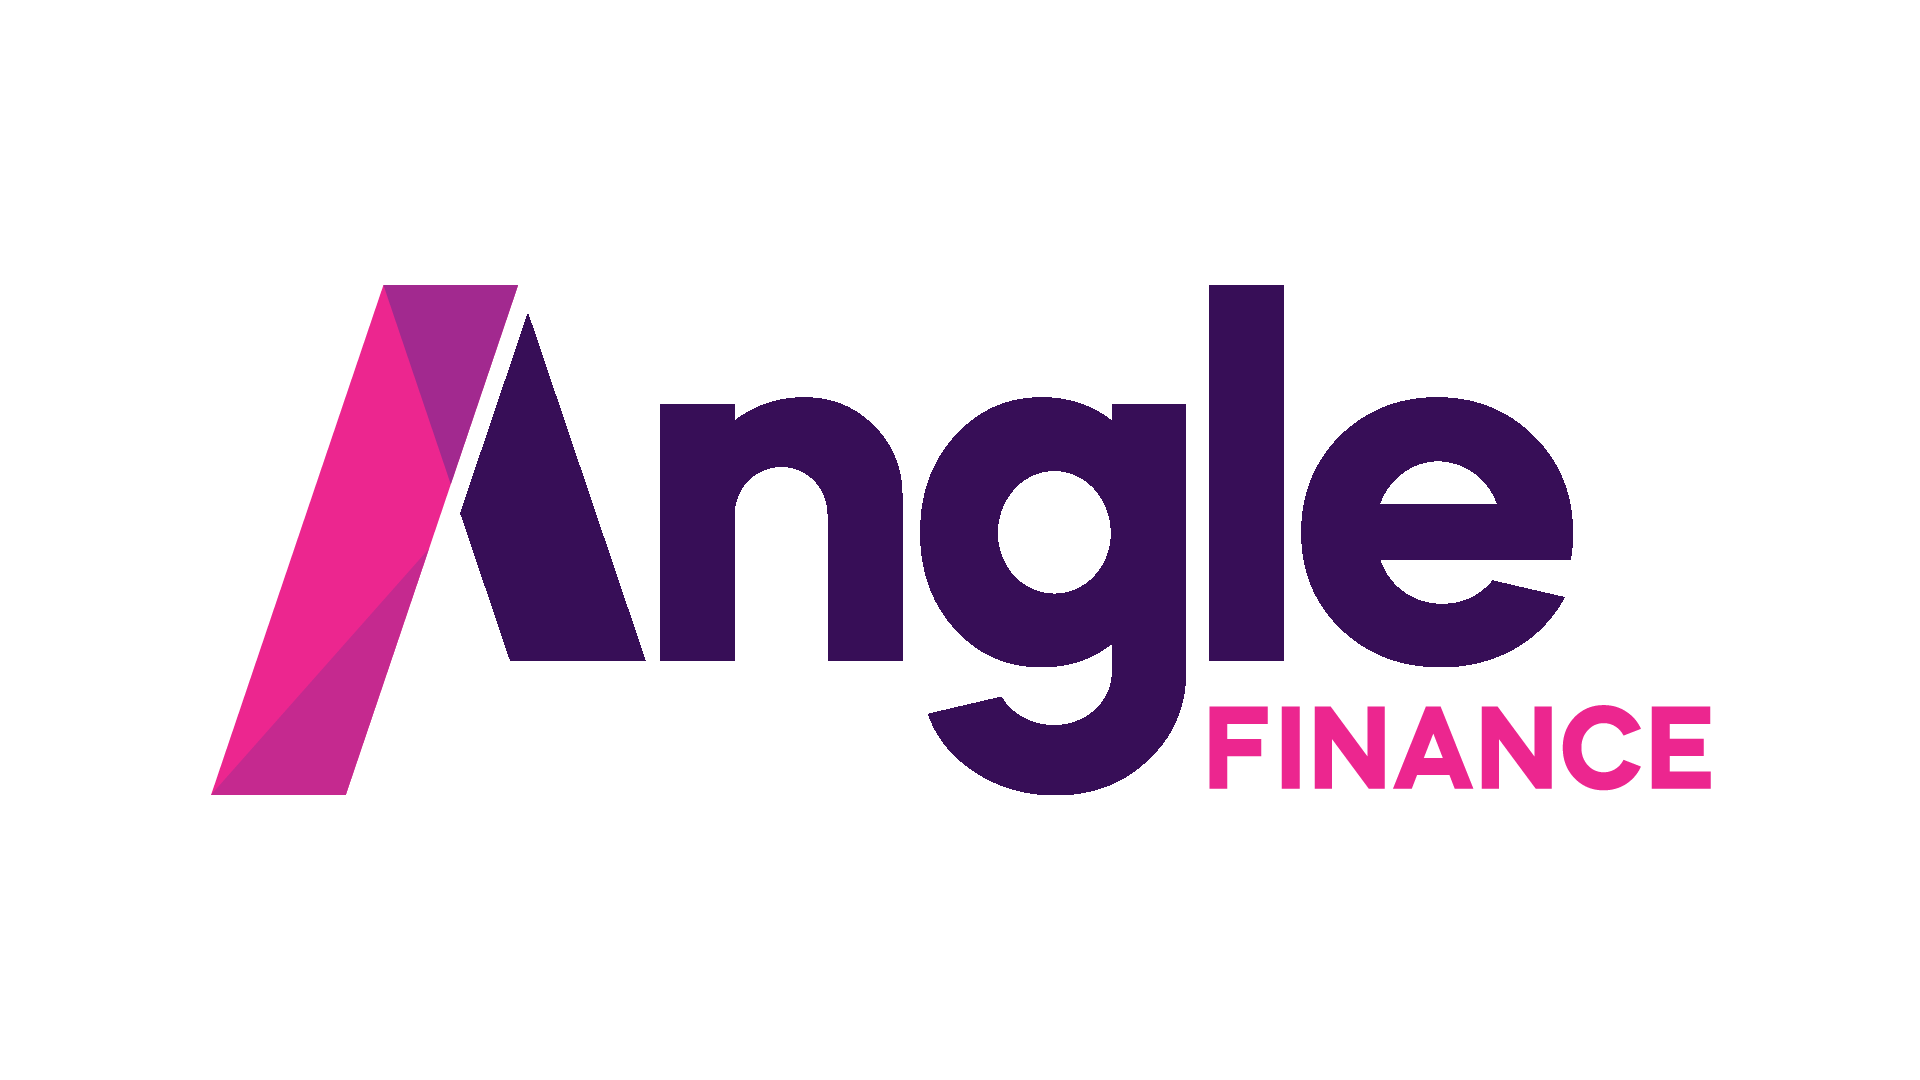 Angle Finance Logo